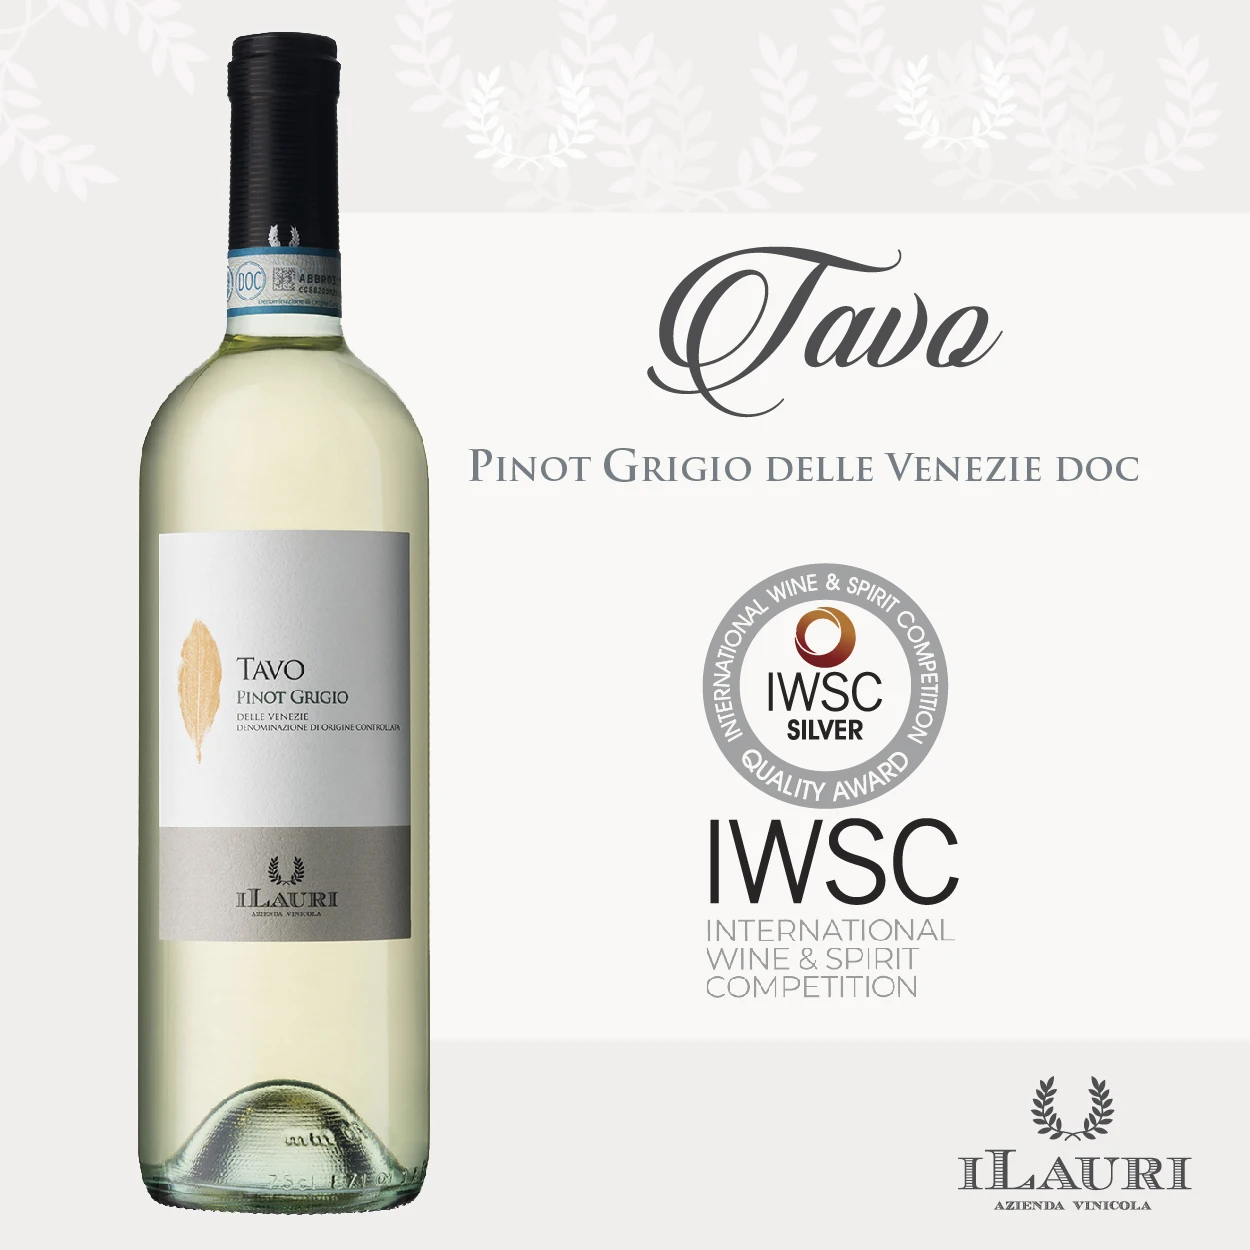 
Top Quality Italian White Wine - ILAURI TAVO Pinot Grigio Delle Venezie DOC (12% vol.) - 75cl 